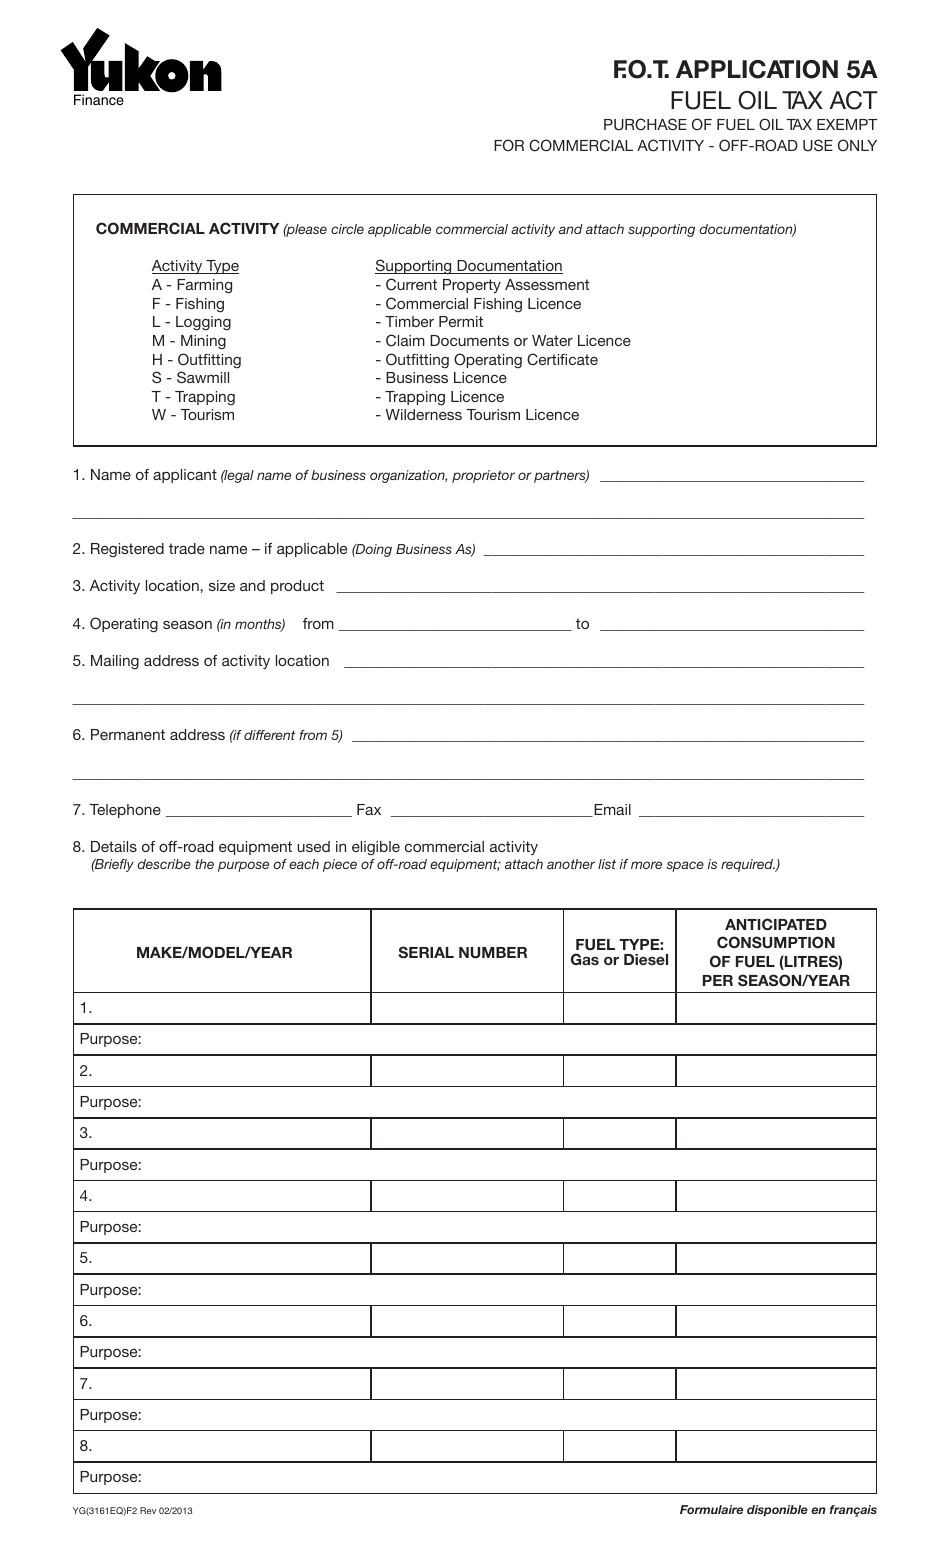 Form YG3161 Fuel Oil Tax - Application 5a - Yukon, Canada, Page 1